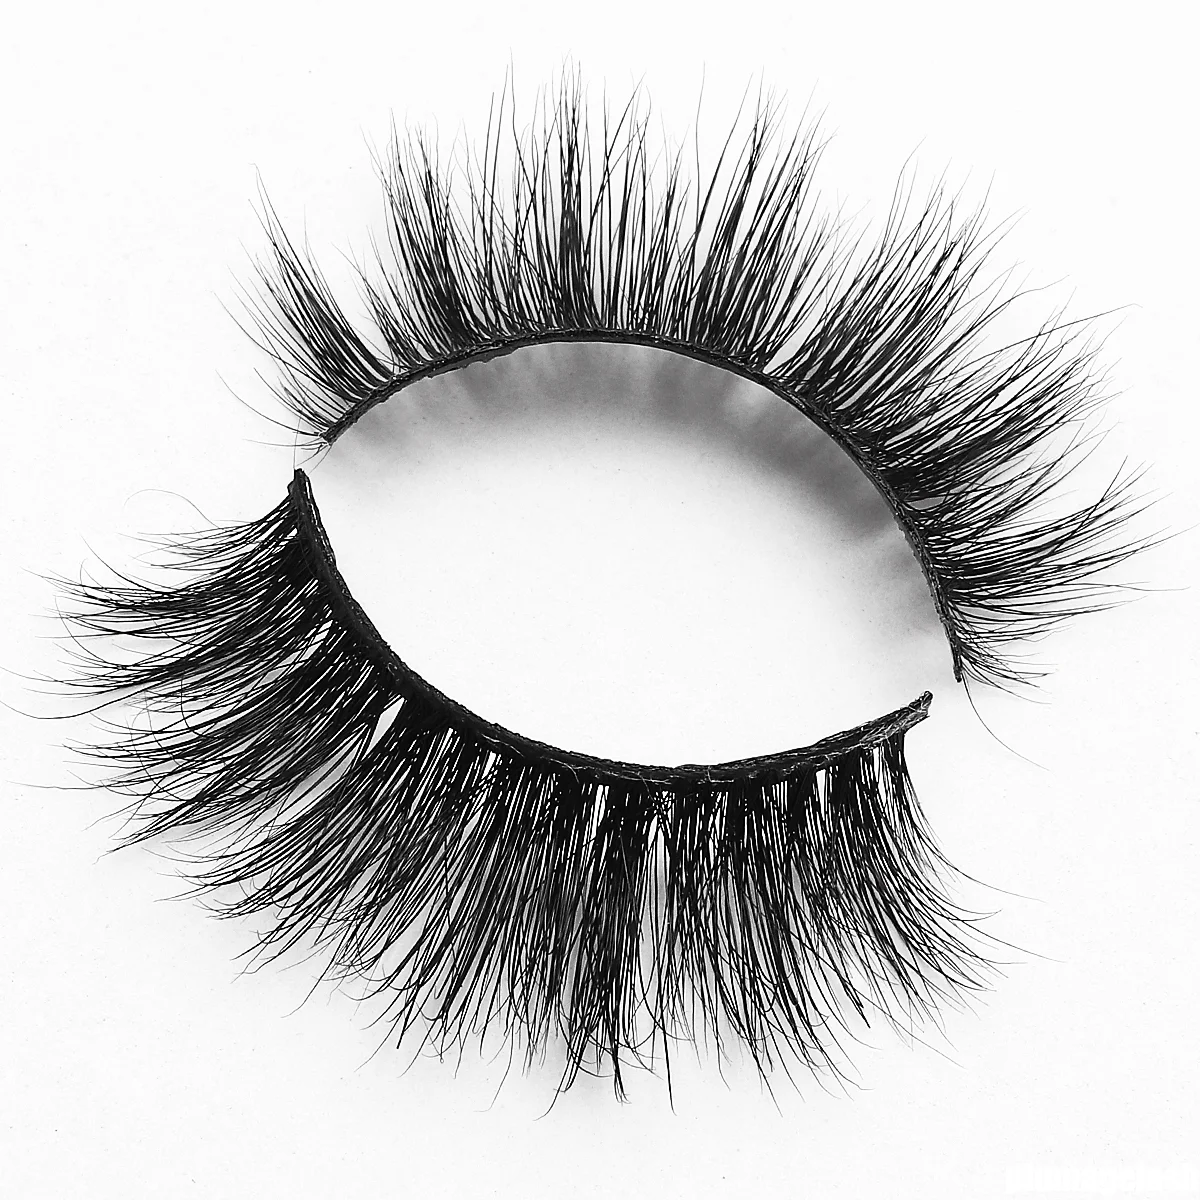 Wholesale beauty supply mink eyelashes manufacturer